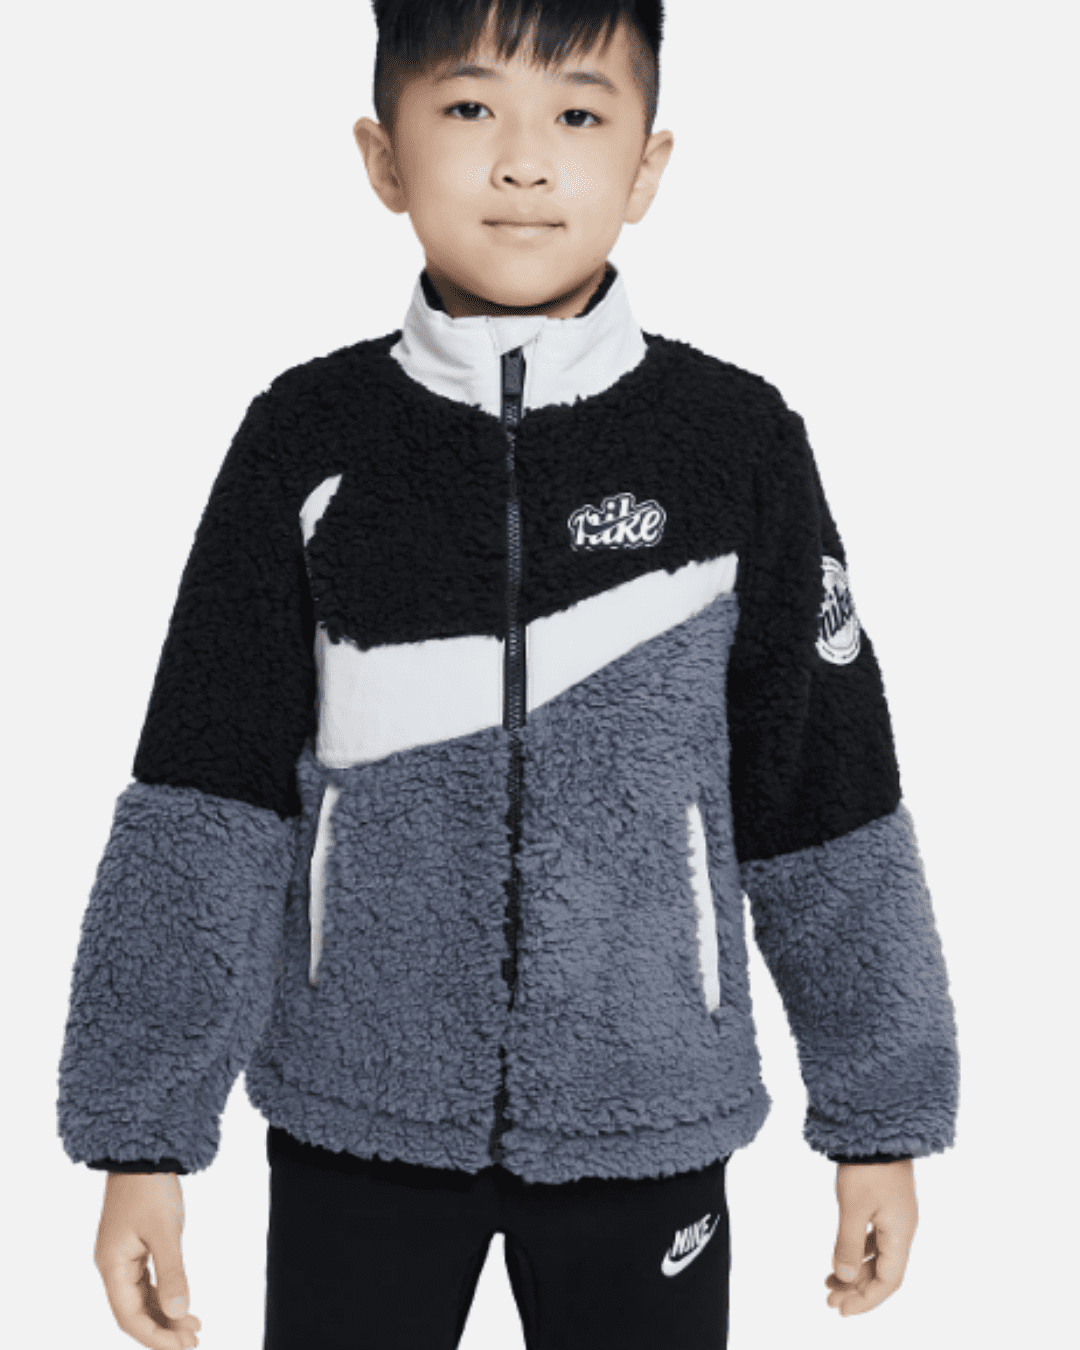 Giacca Nike Sherpa Bambini - Nero/Grigio